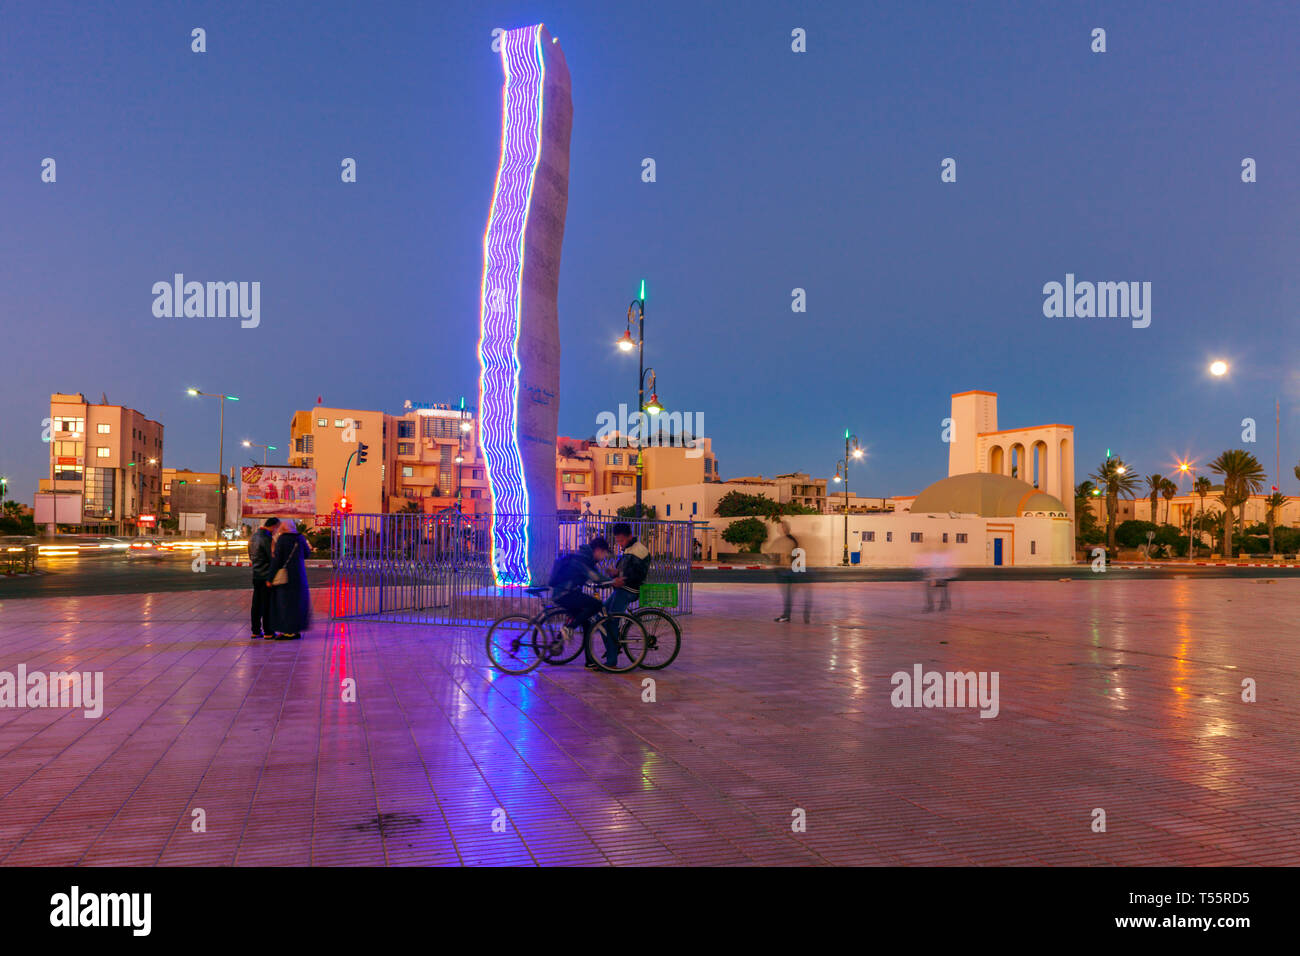 La escultura moderna en la plaza de la ciudad al atardecer en Dakhla, Marruecos Foto de stock